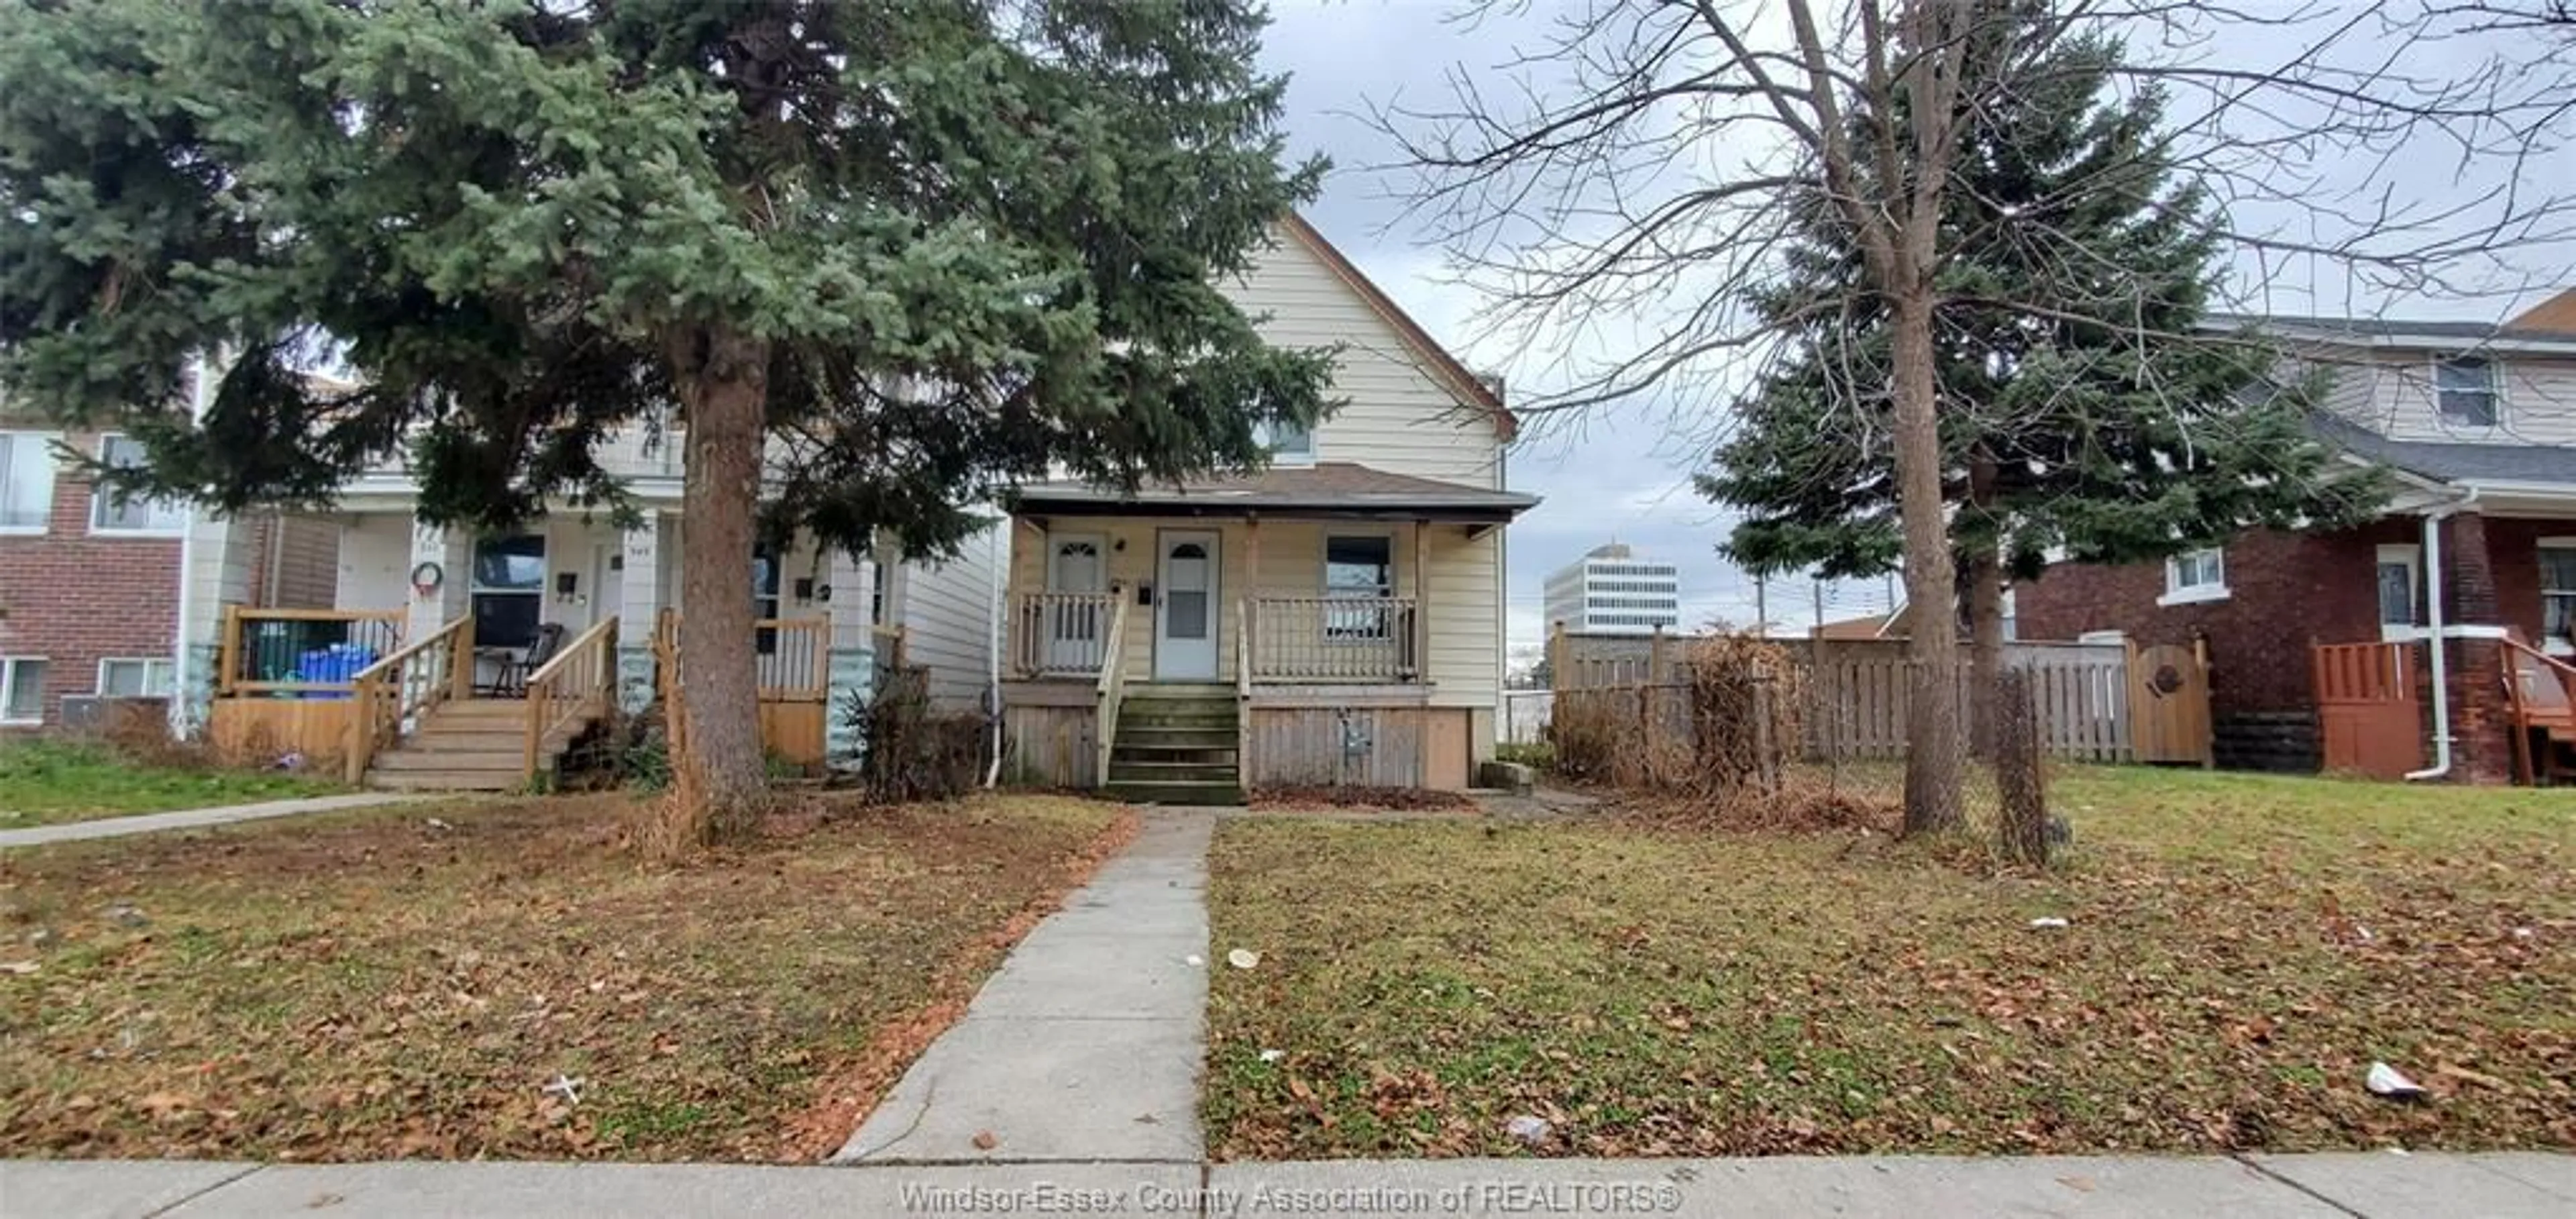 Frontside or backside of a home for 947 WINDSOR Ave, Windsor Ontario N9A 1K1